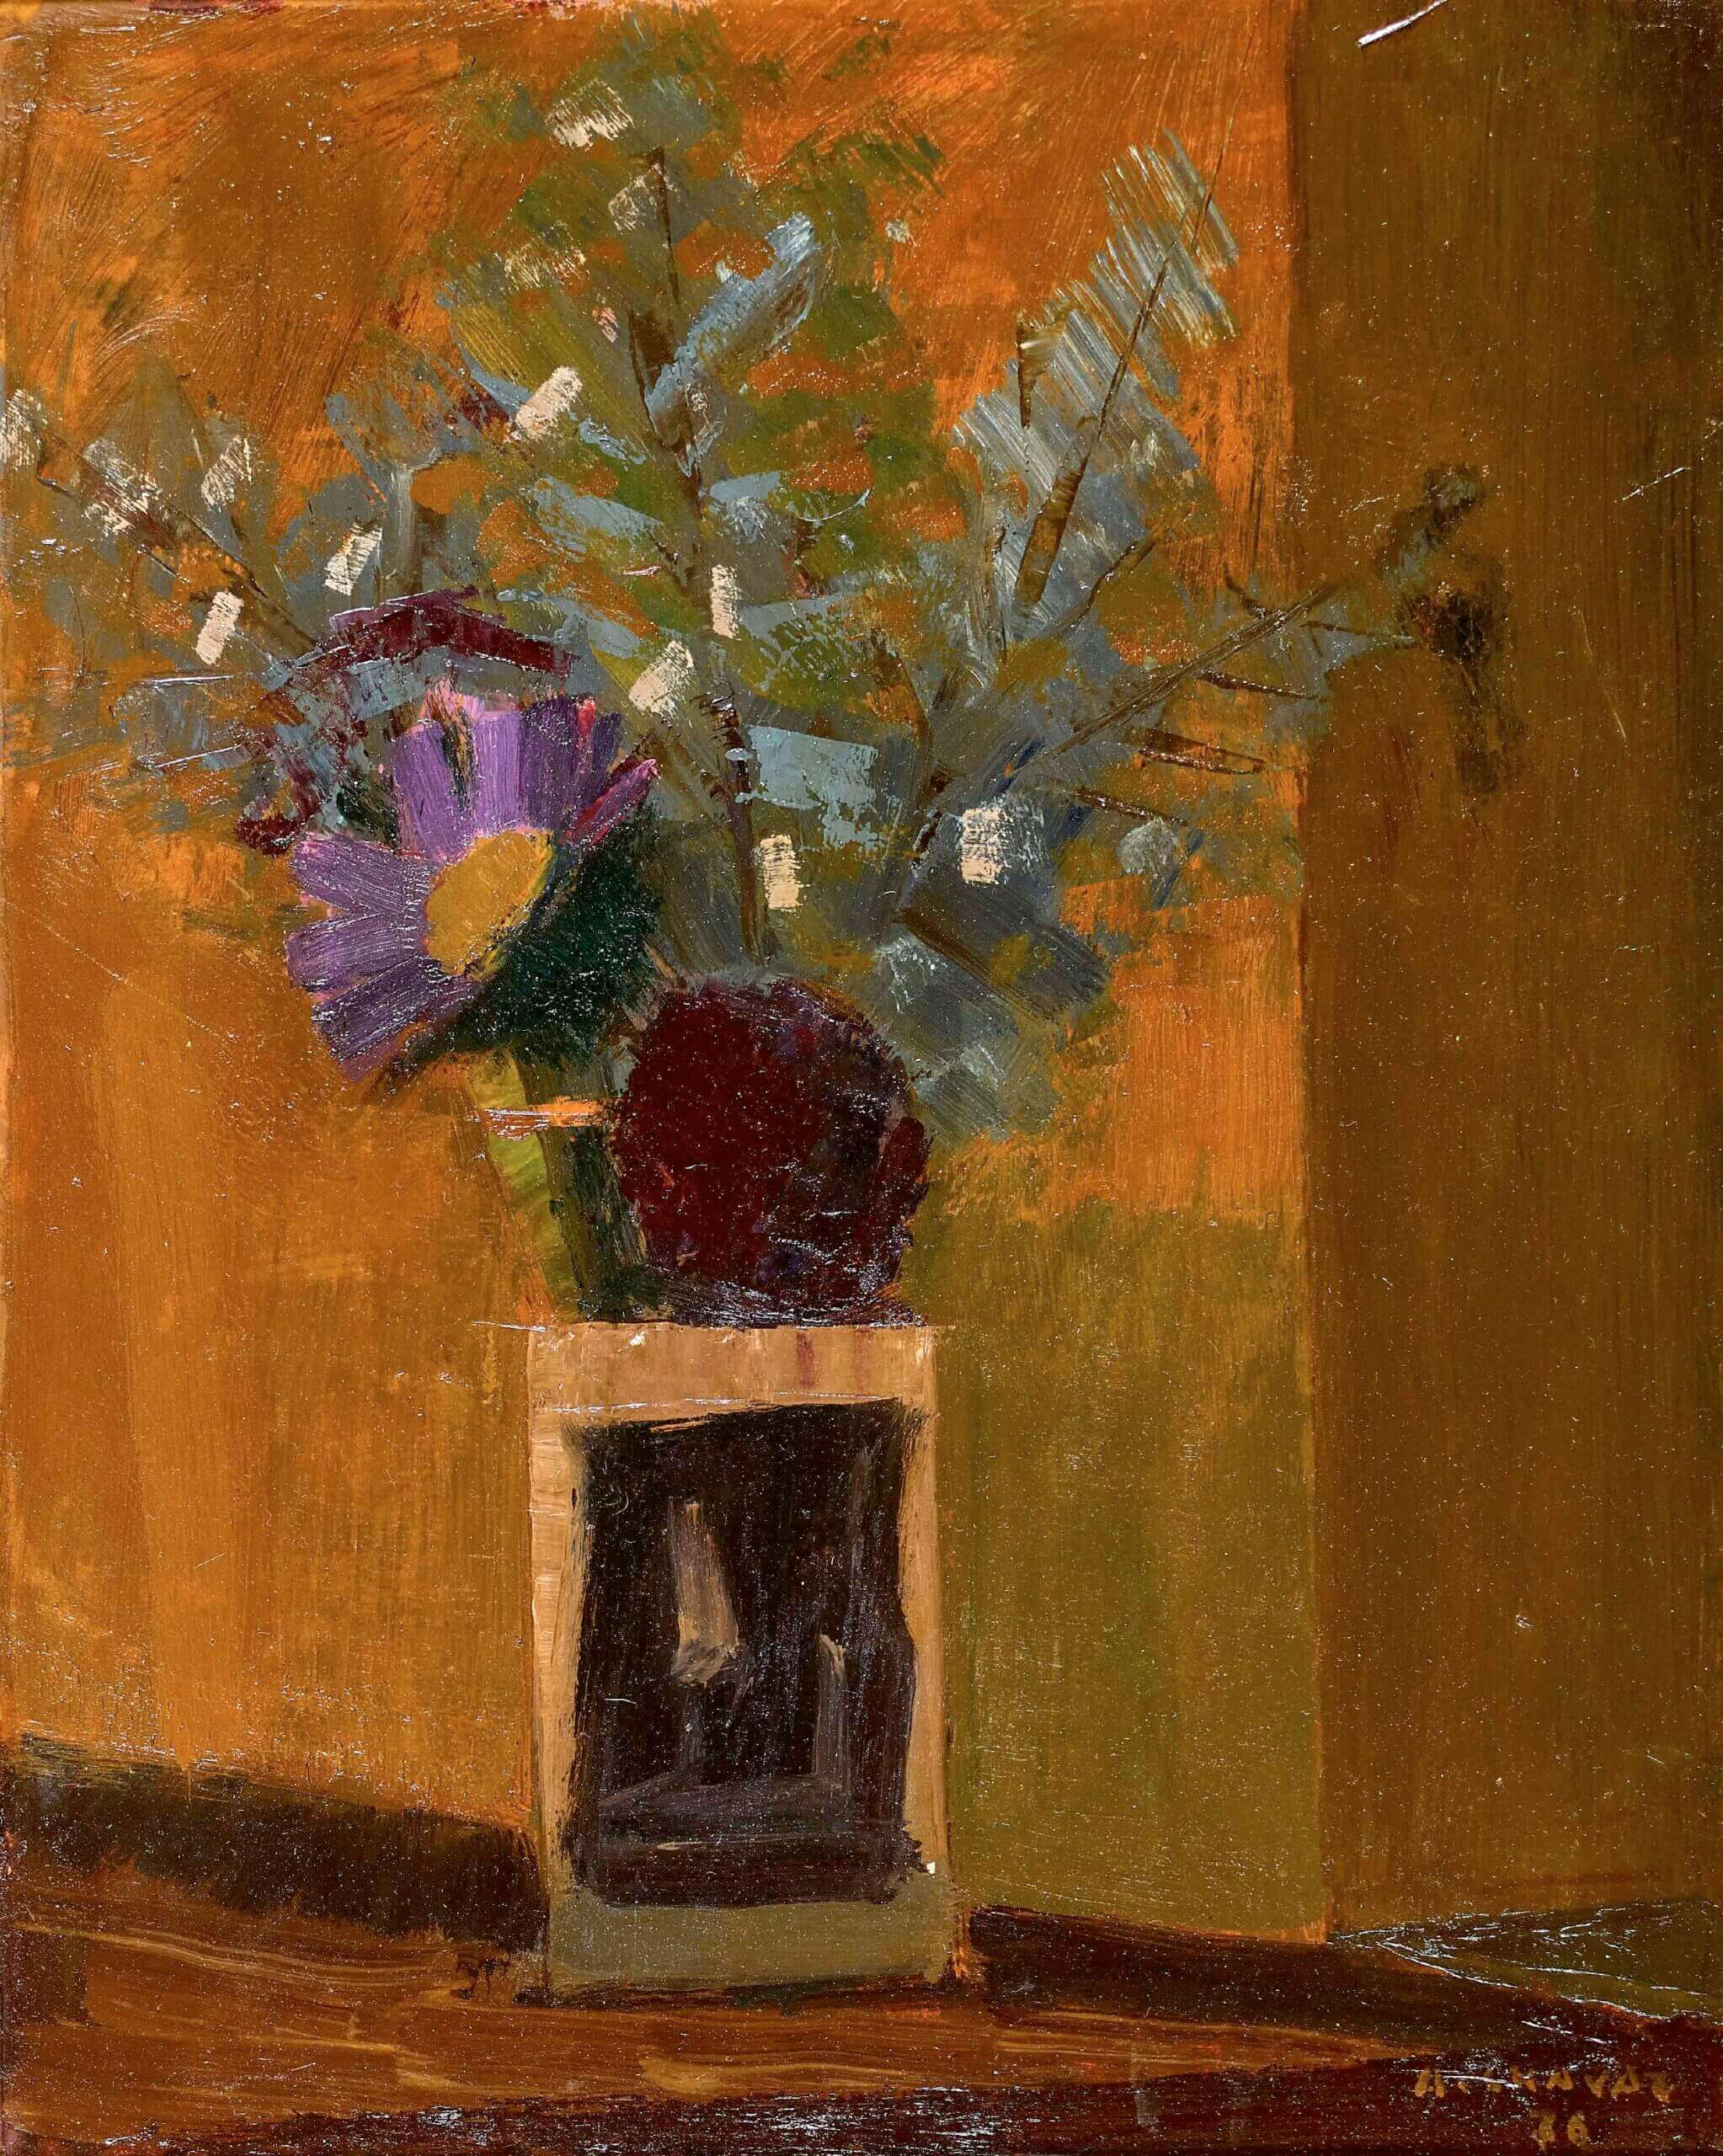 Gemälde von Albert Chavaz. Es handelt sich um ein Stilleben mit einem Blumenstrauss